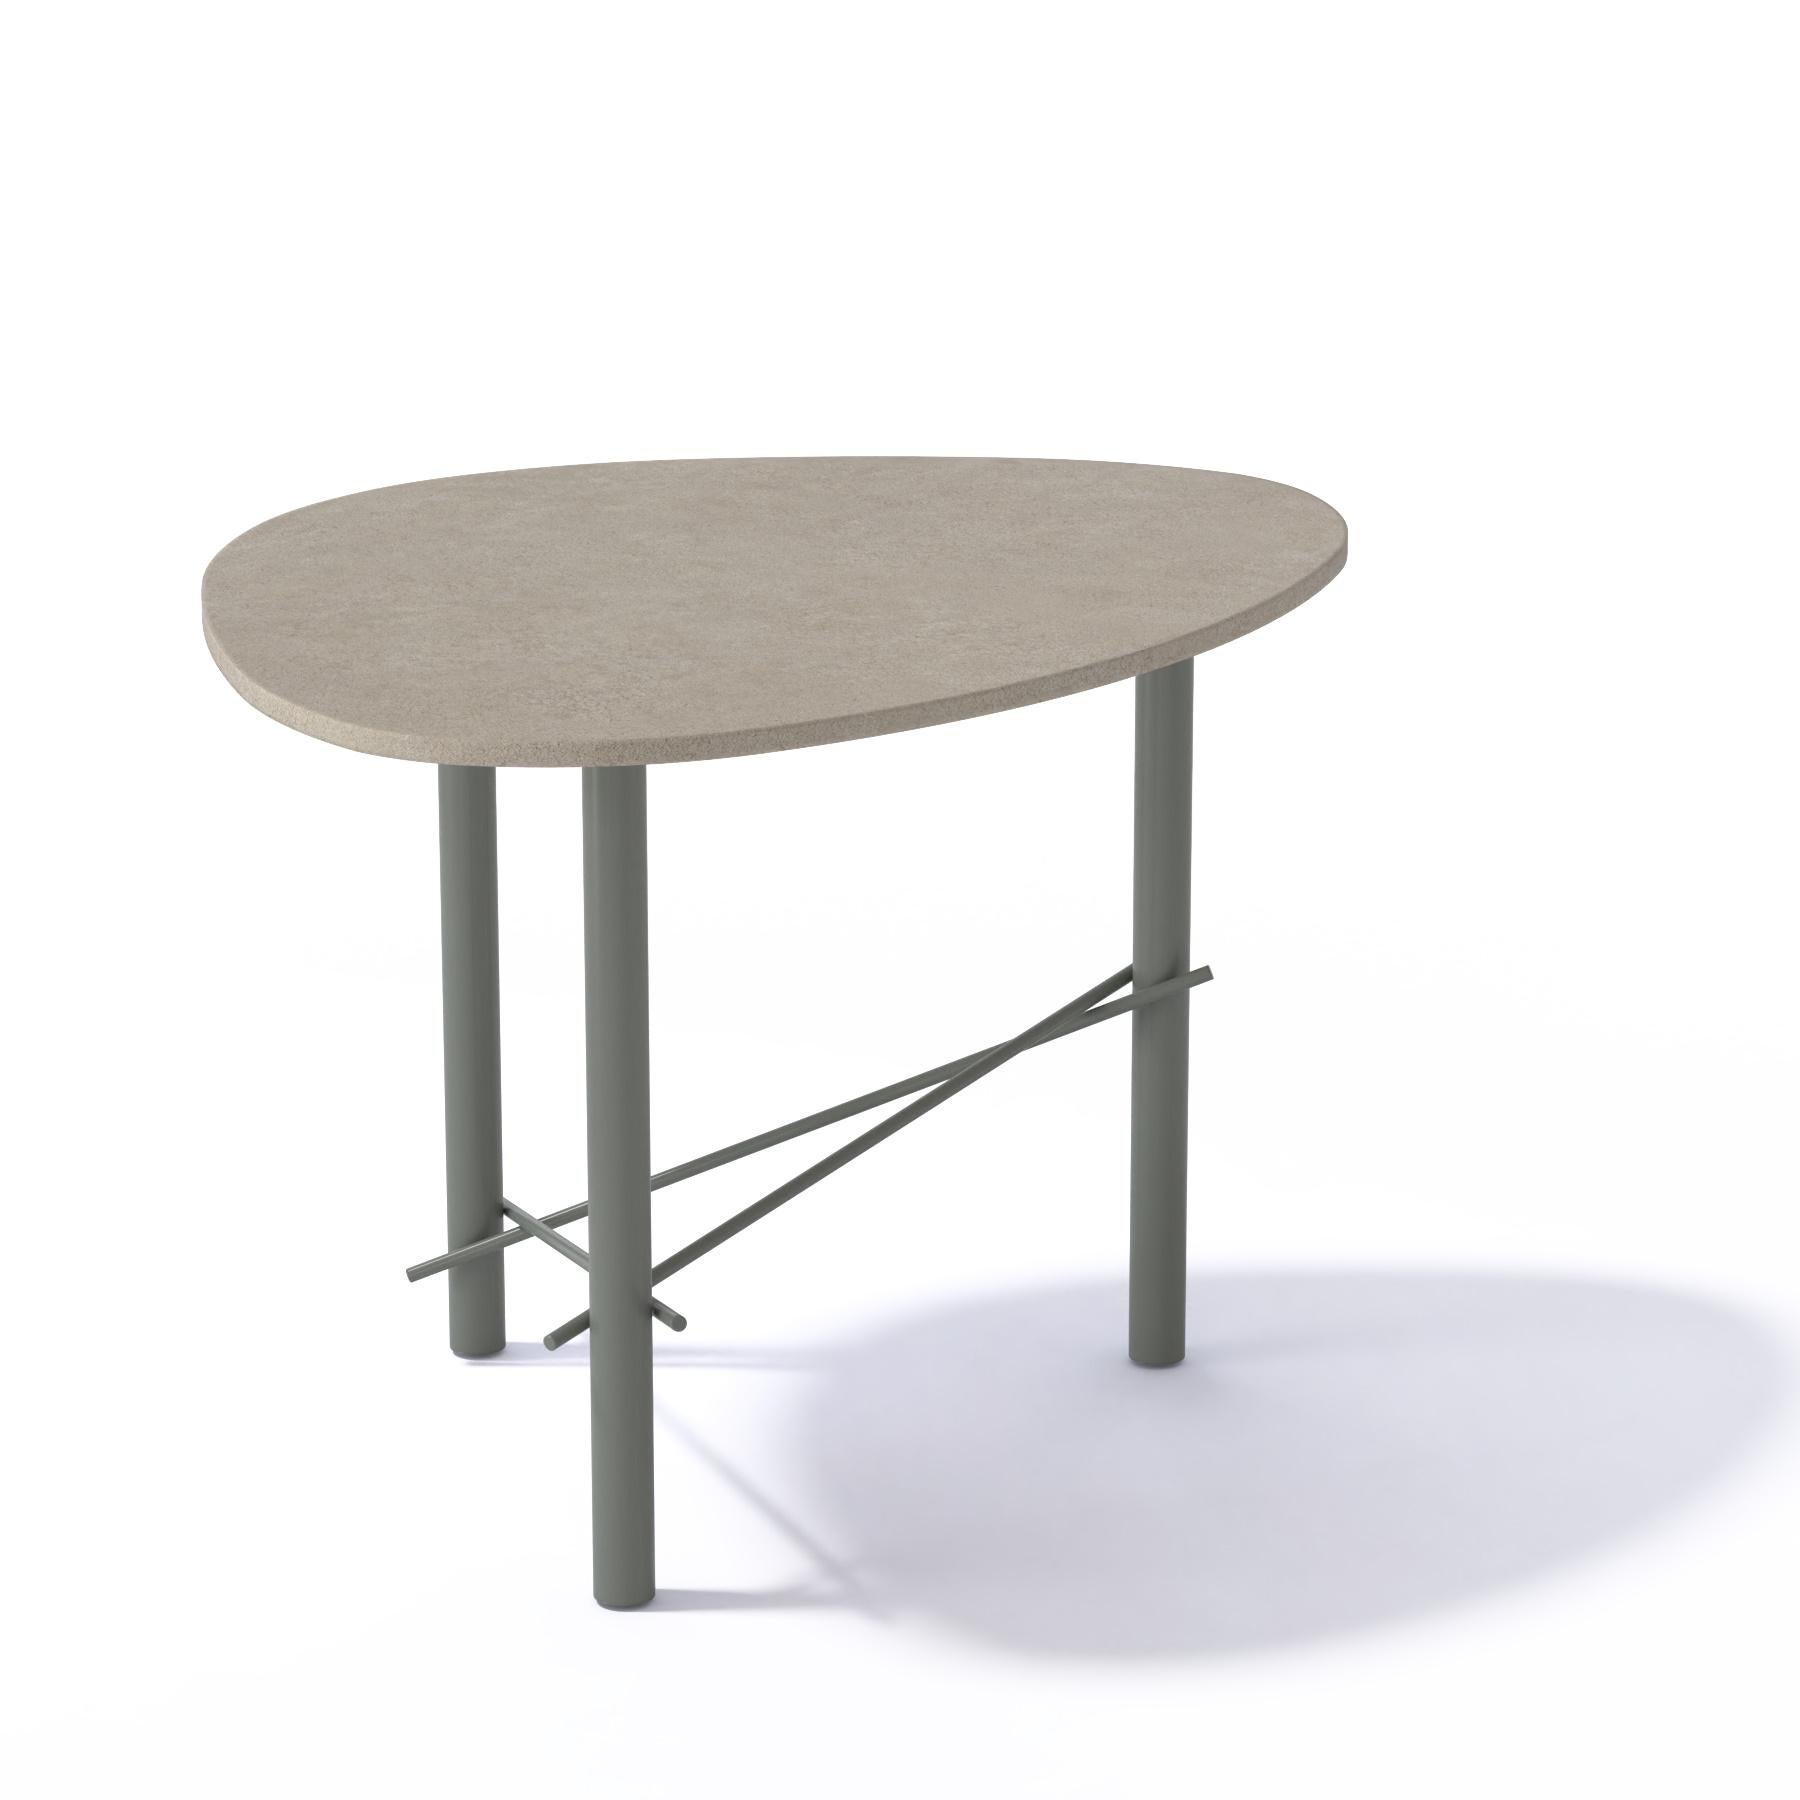 Grande table en métal et céramique « cookies »
Plateau en céramique Laminam (Terre di Matera Bocciardato) et pieds en acier
Cookie est une collection de tables basses par une forme innovante et originale. La forme supérieure ressemble à un biscuit,